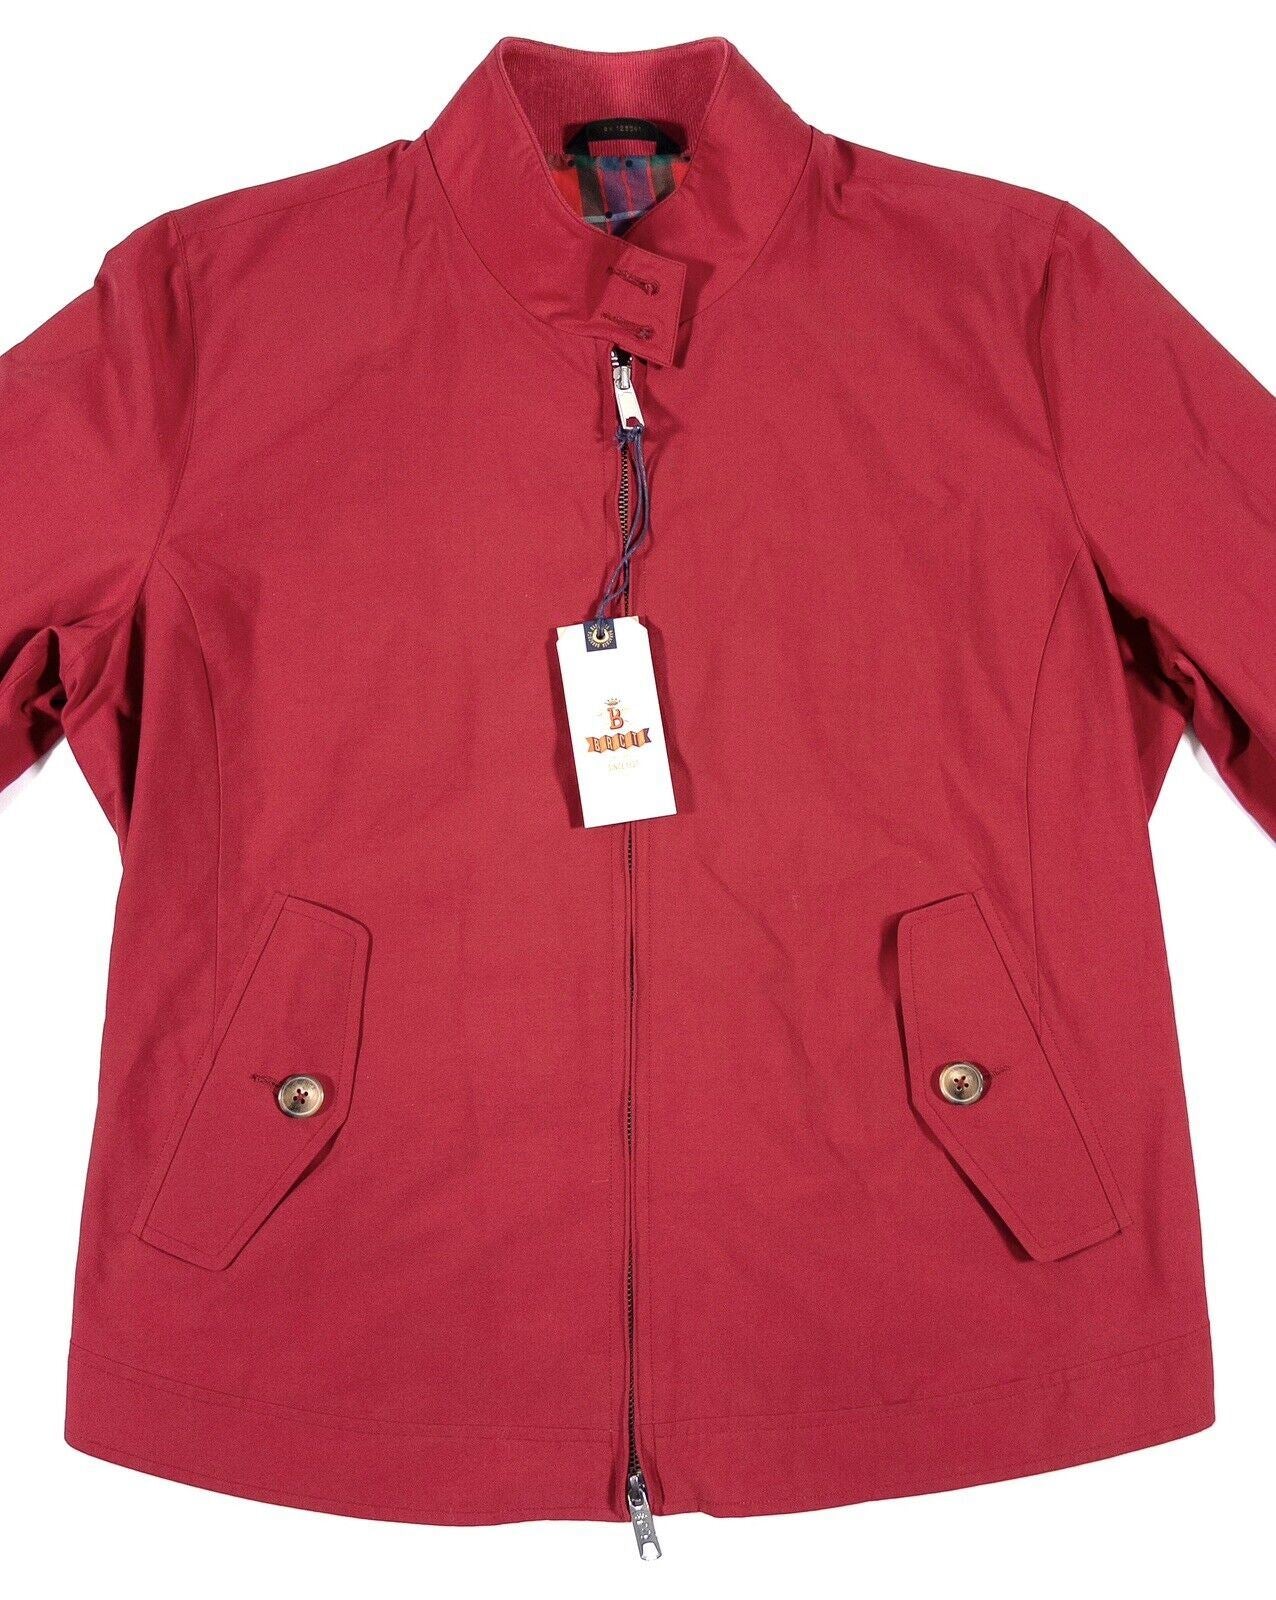 BARACUTA Women's Jacket Bomber Coat Red Size UK 18